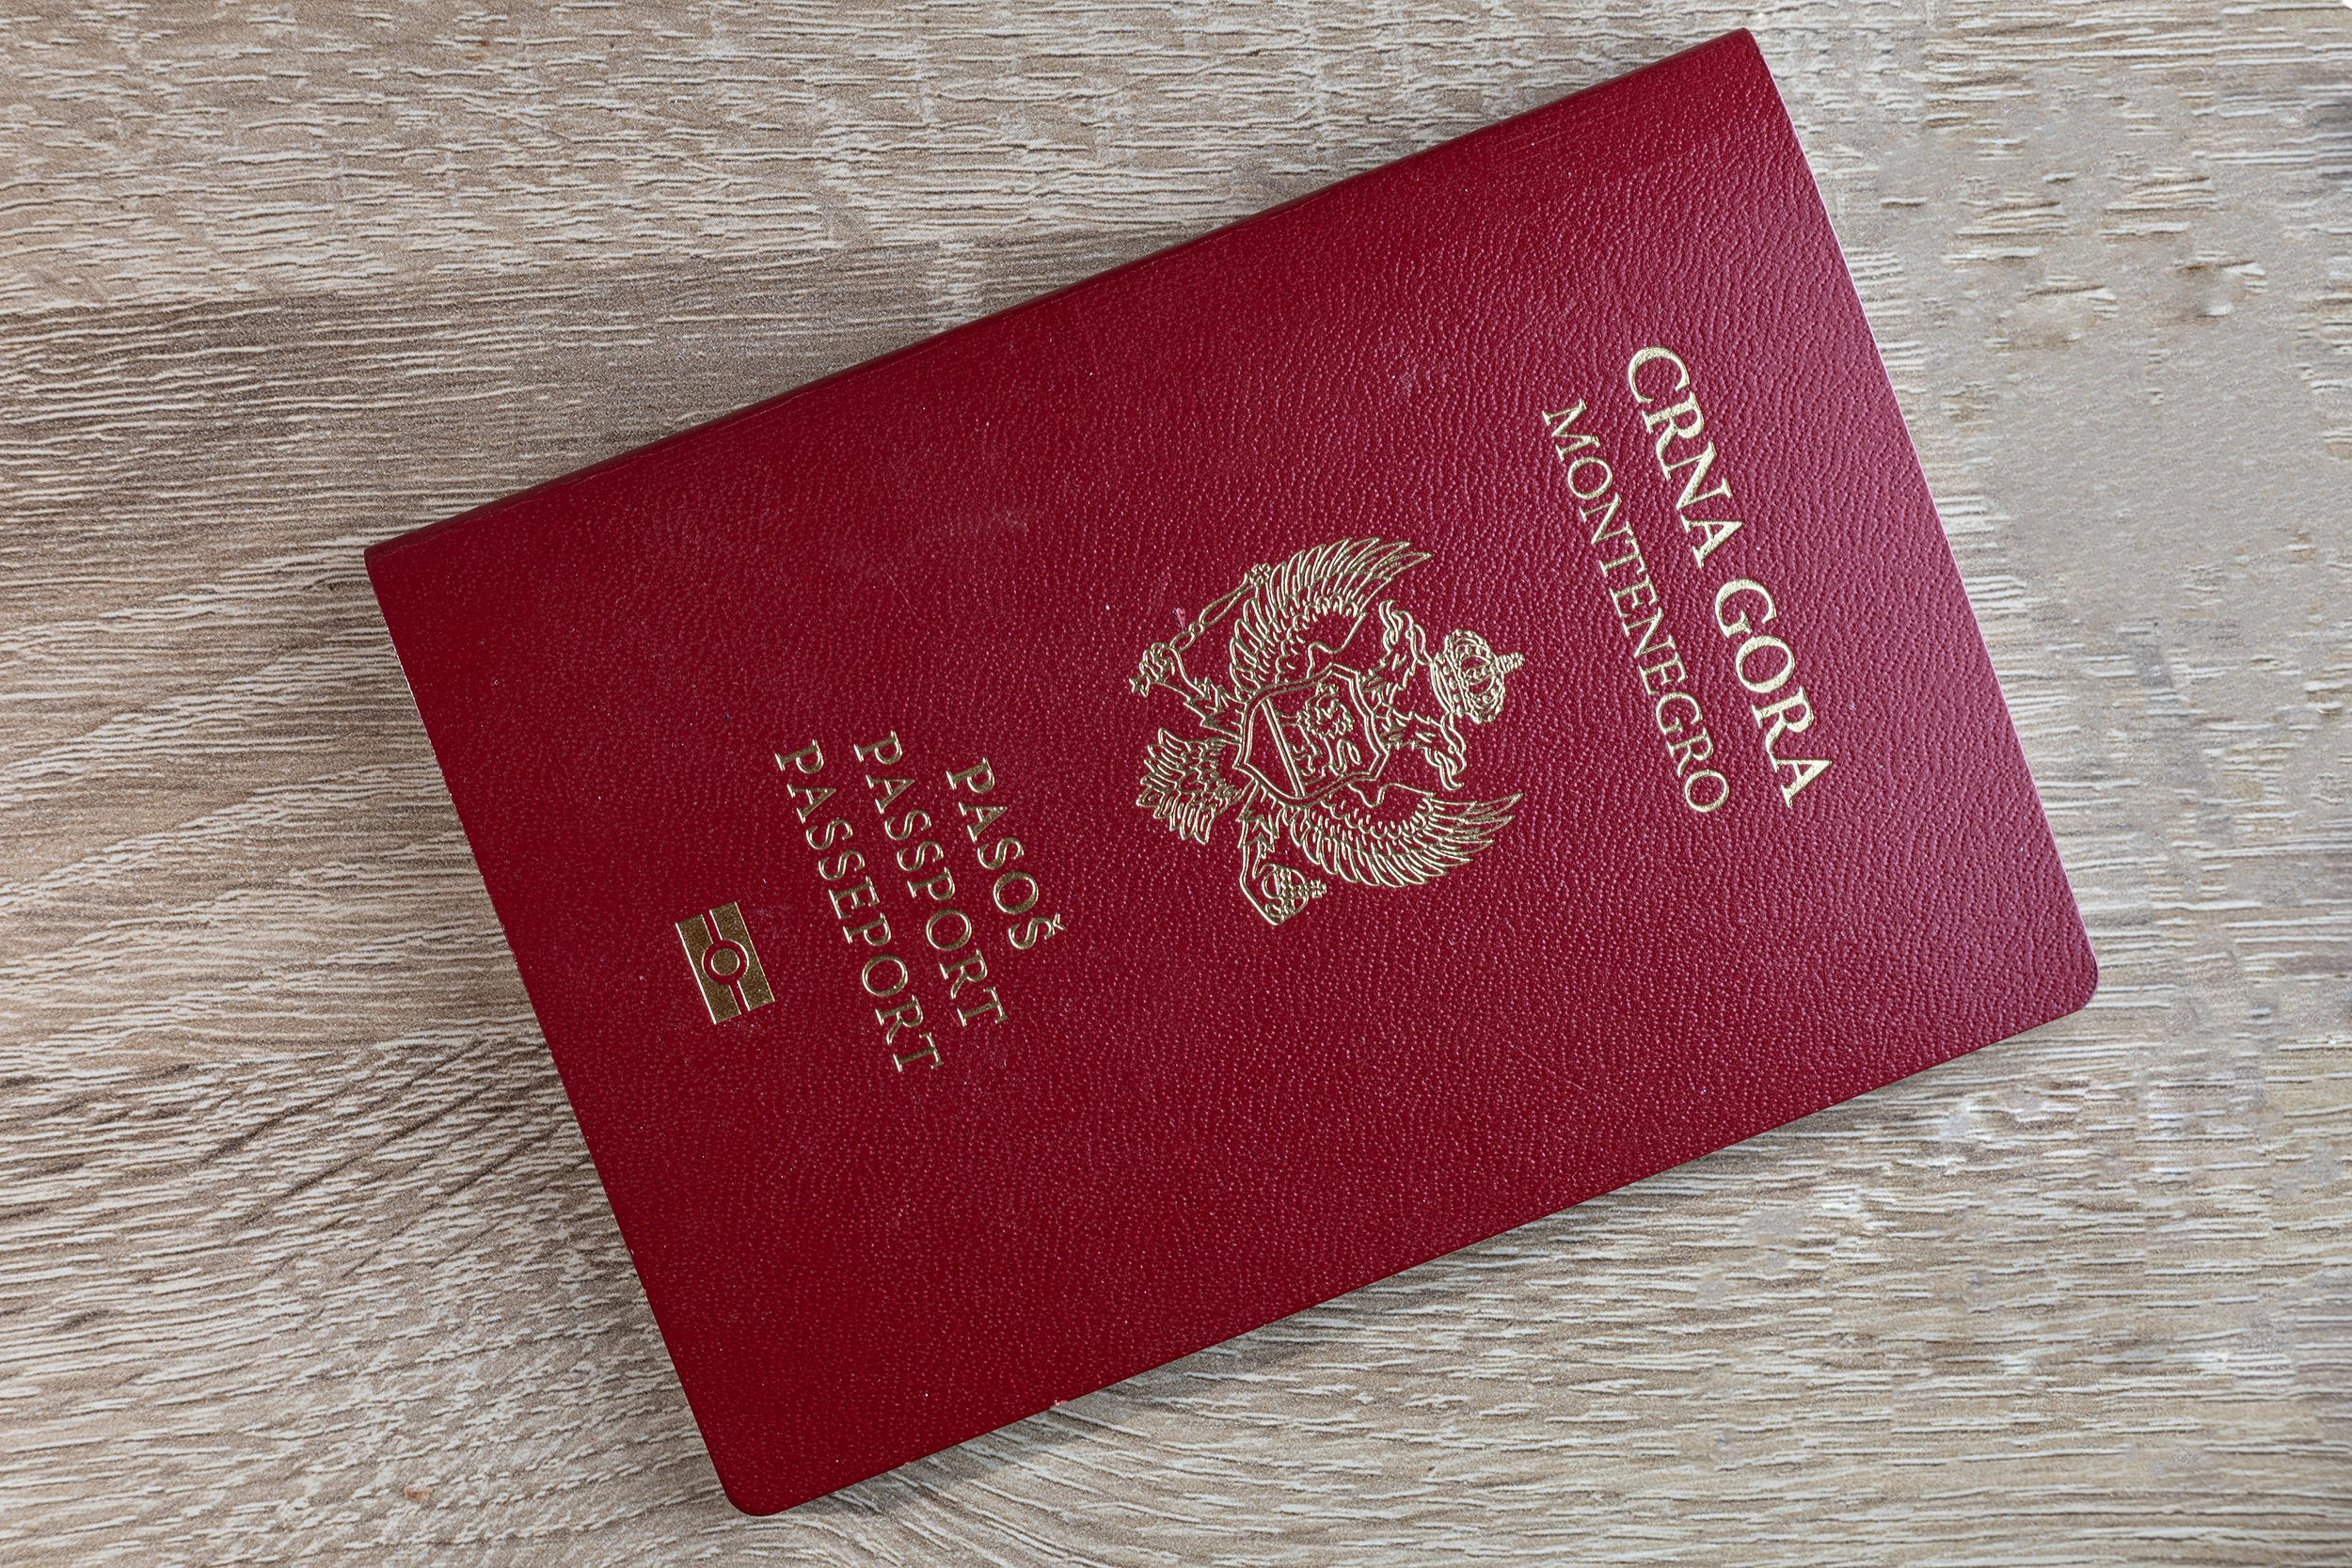 Черногорский паспорт, который могут оформить иностранцы